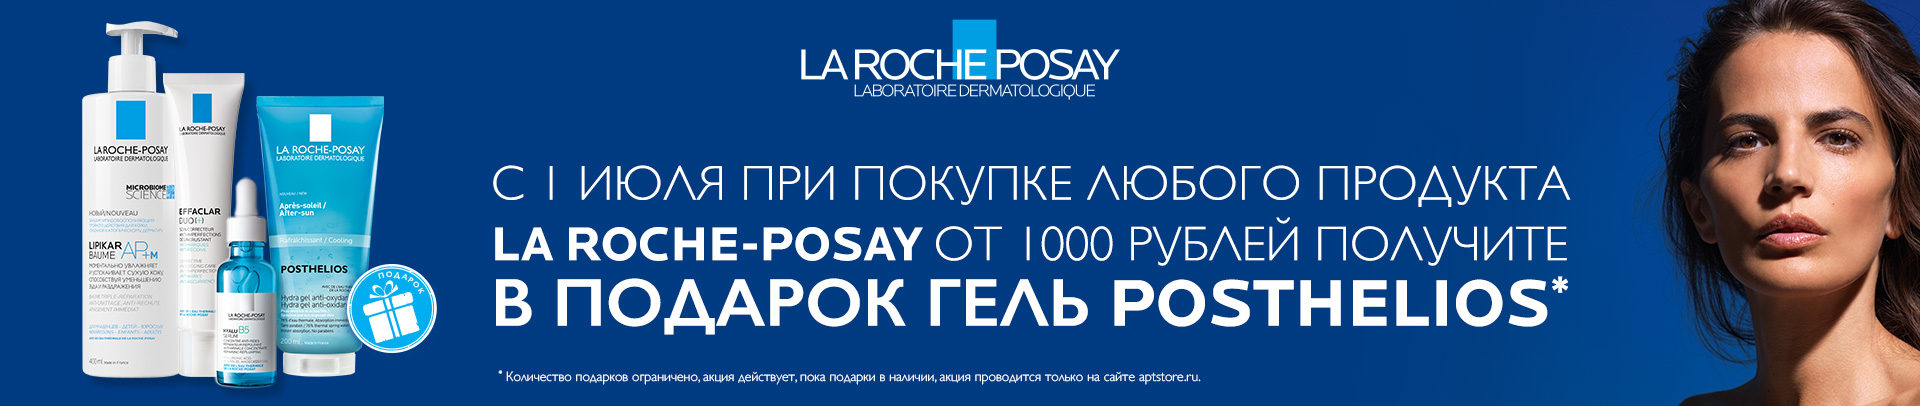 Гель Posthelios 200 мл. В ПОДАРОК за покупку любого продукта La Roche-Posay от 1000 руб. 